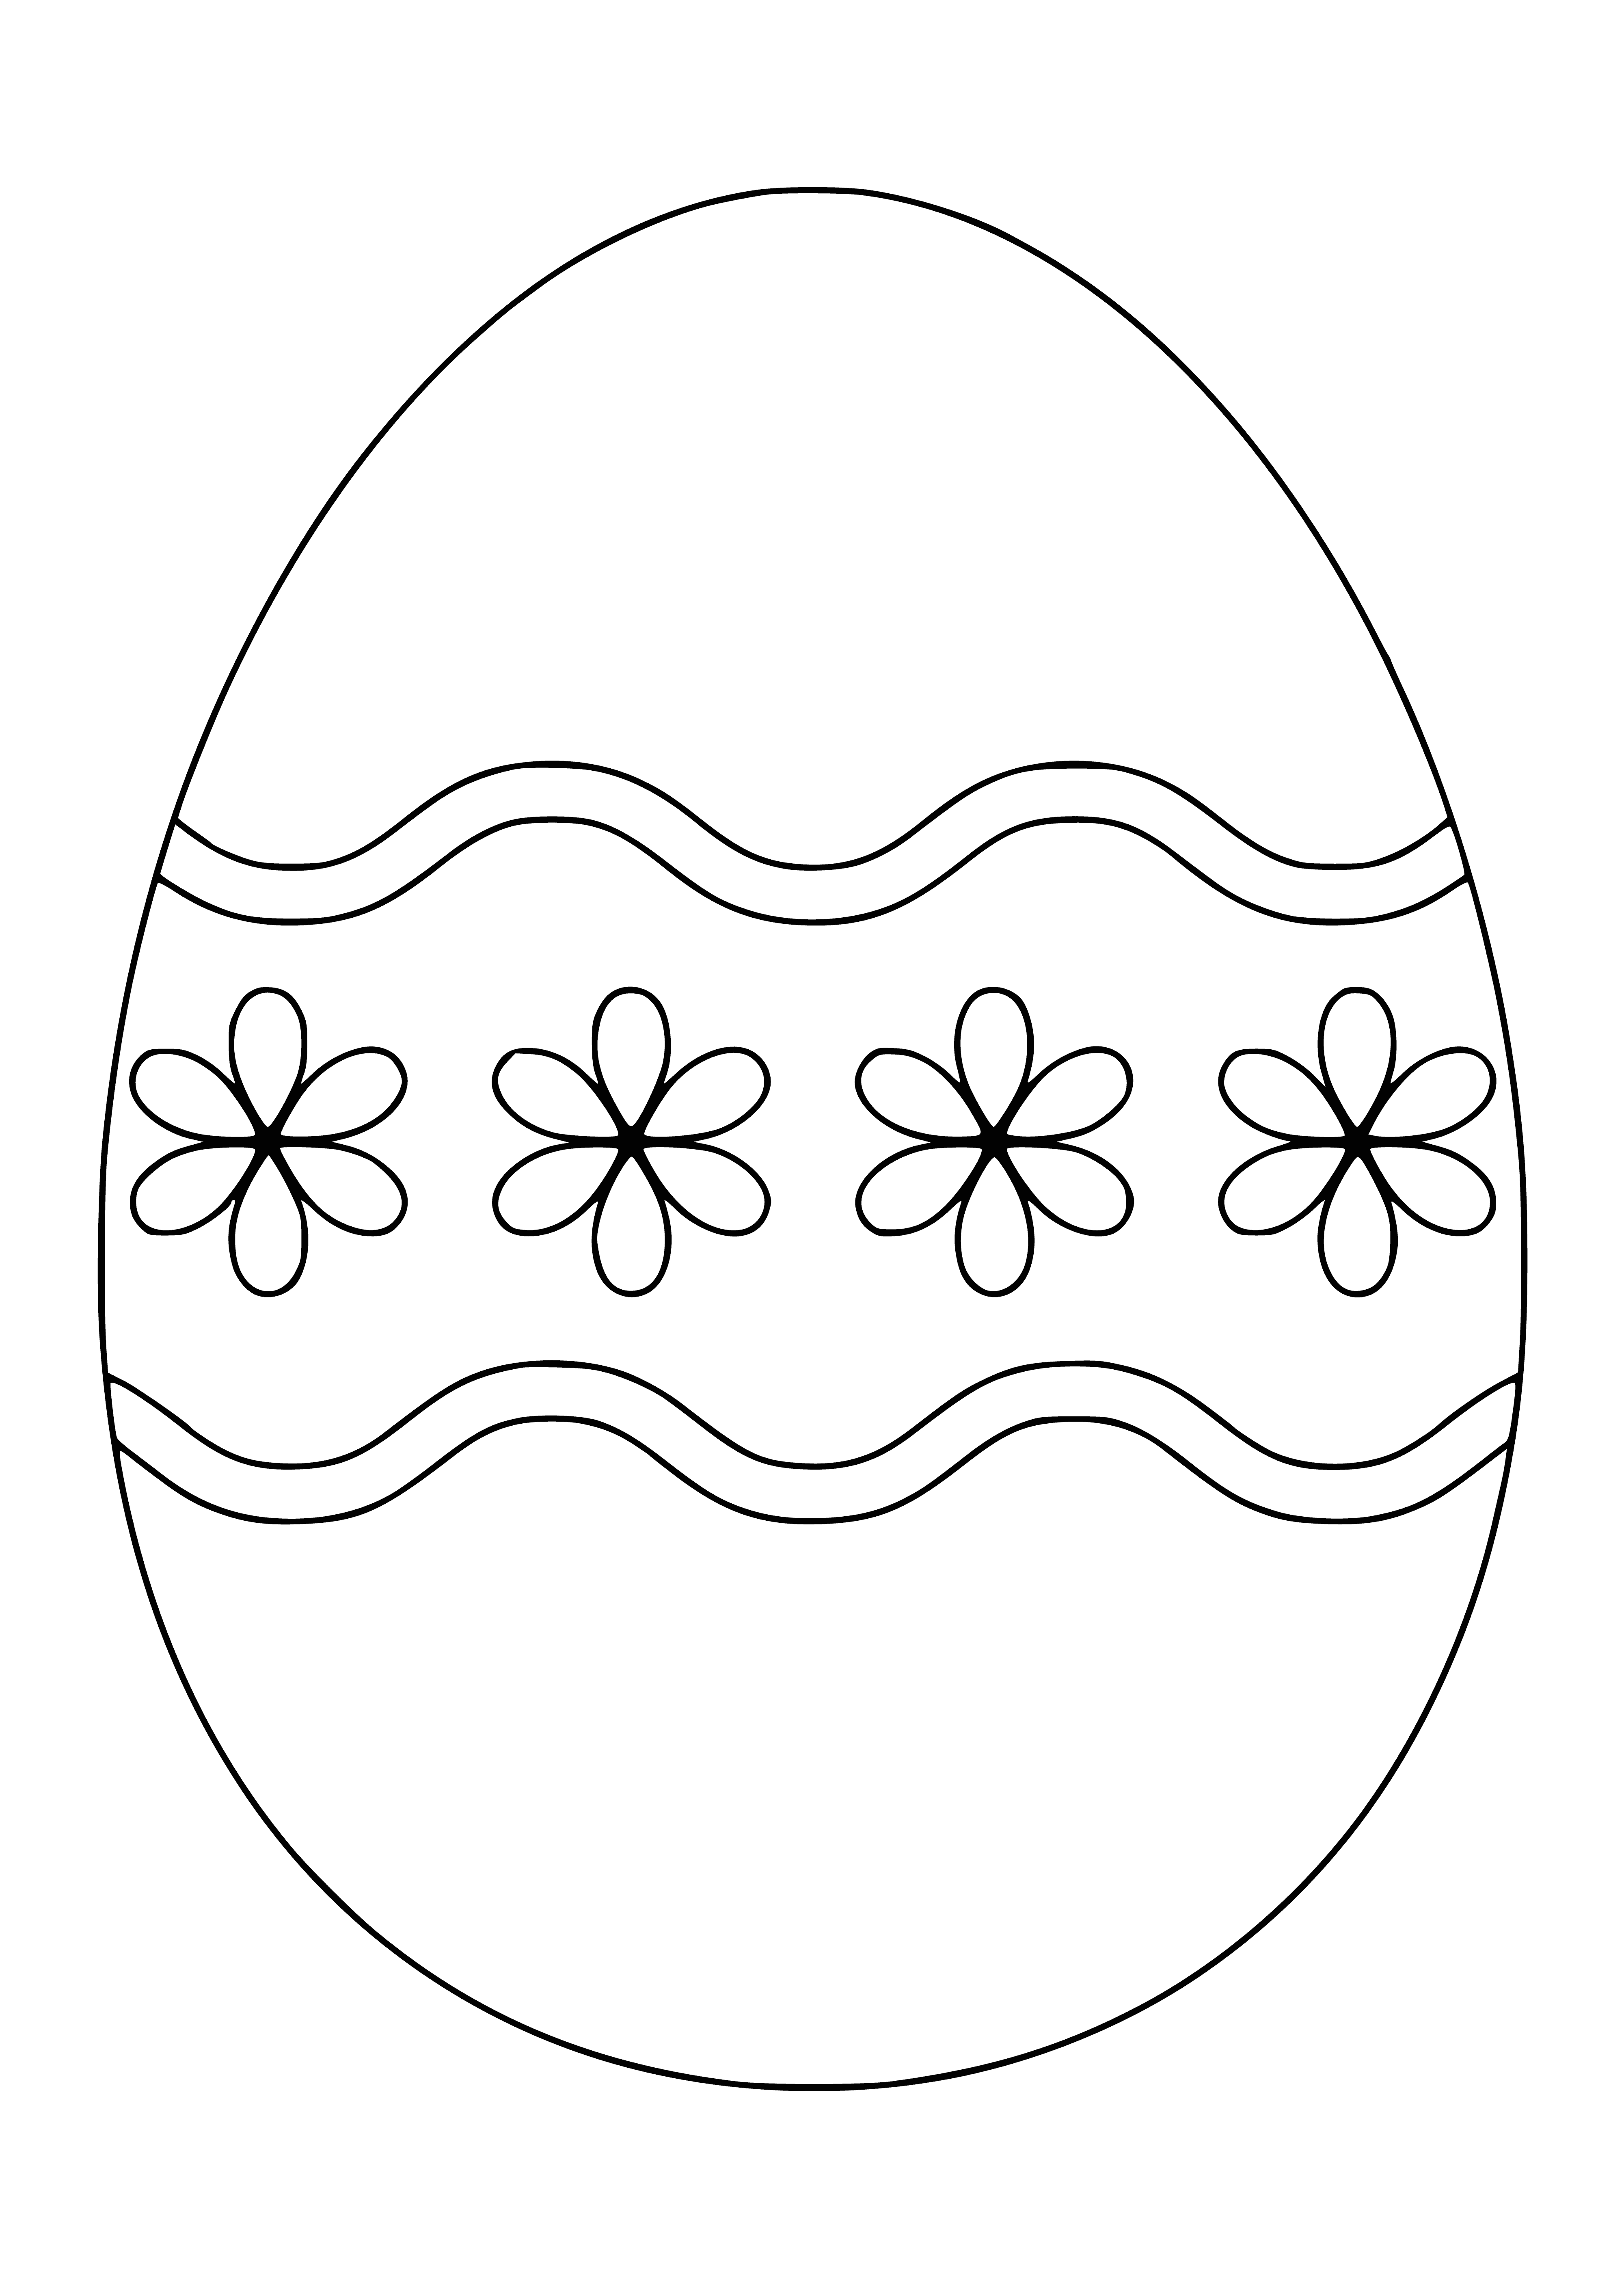 Яйцо шаблон для детей. Пасхальное яйцо раскраска. Пасхальное яйцо раскраска для детей. Раскраски яйца на Пасху для детей. Раскраски пасочных яиц.